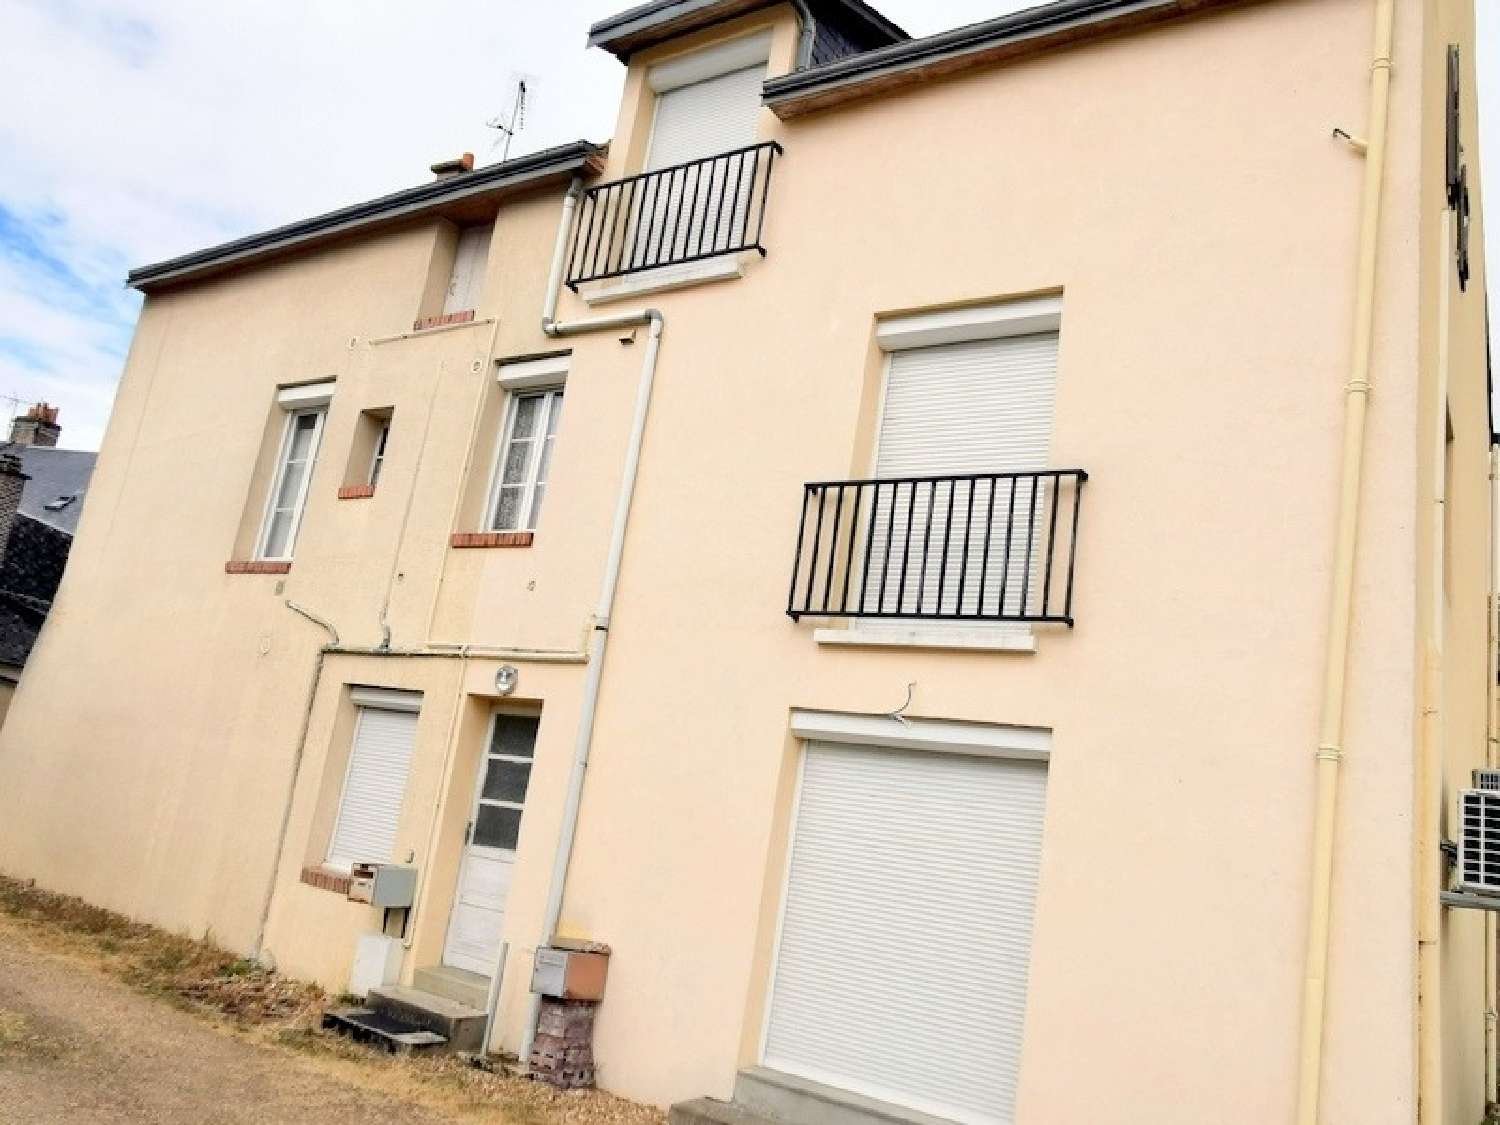  for sale house Bessé-sur-Braye Sarthe 4